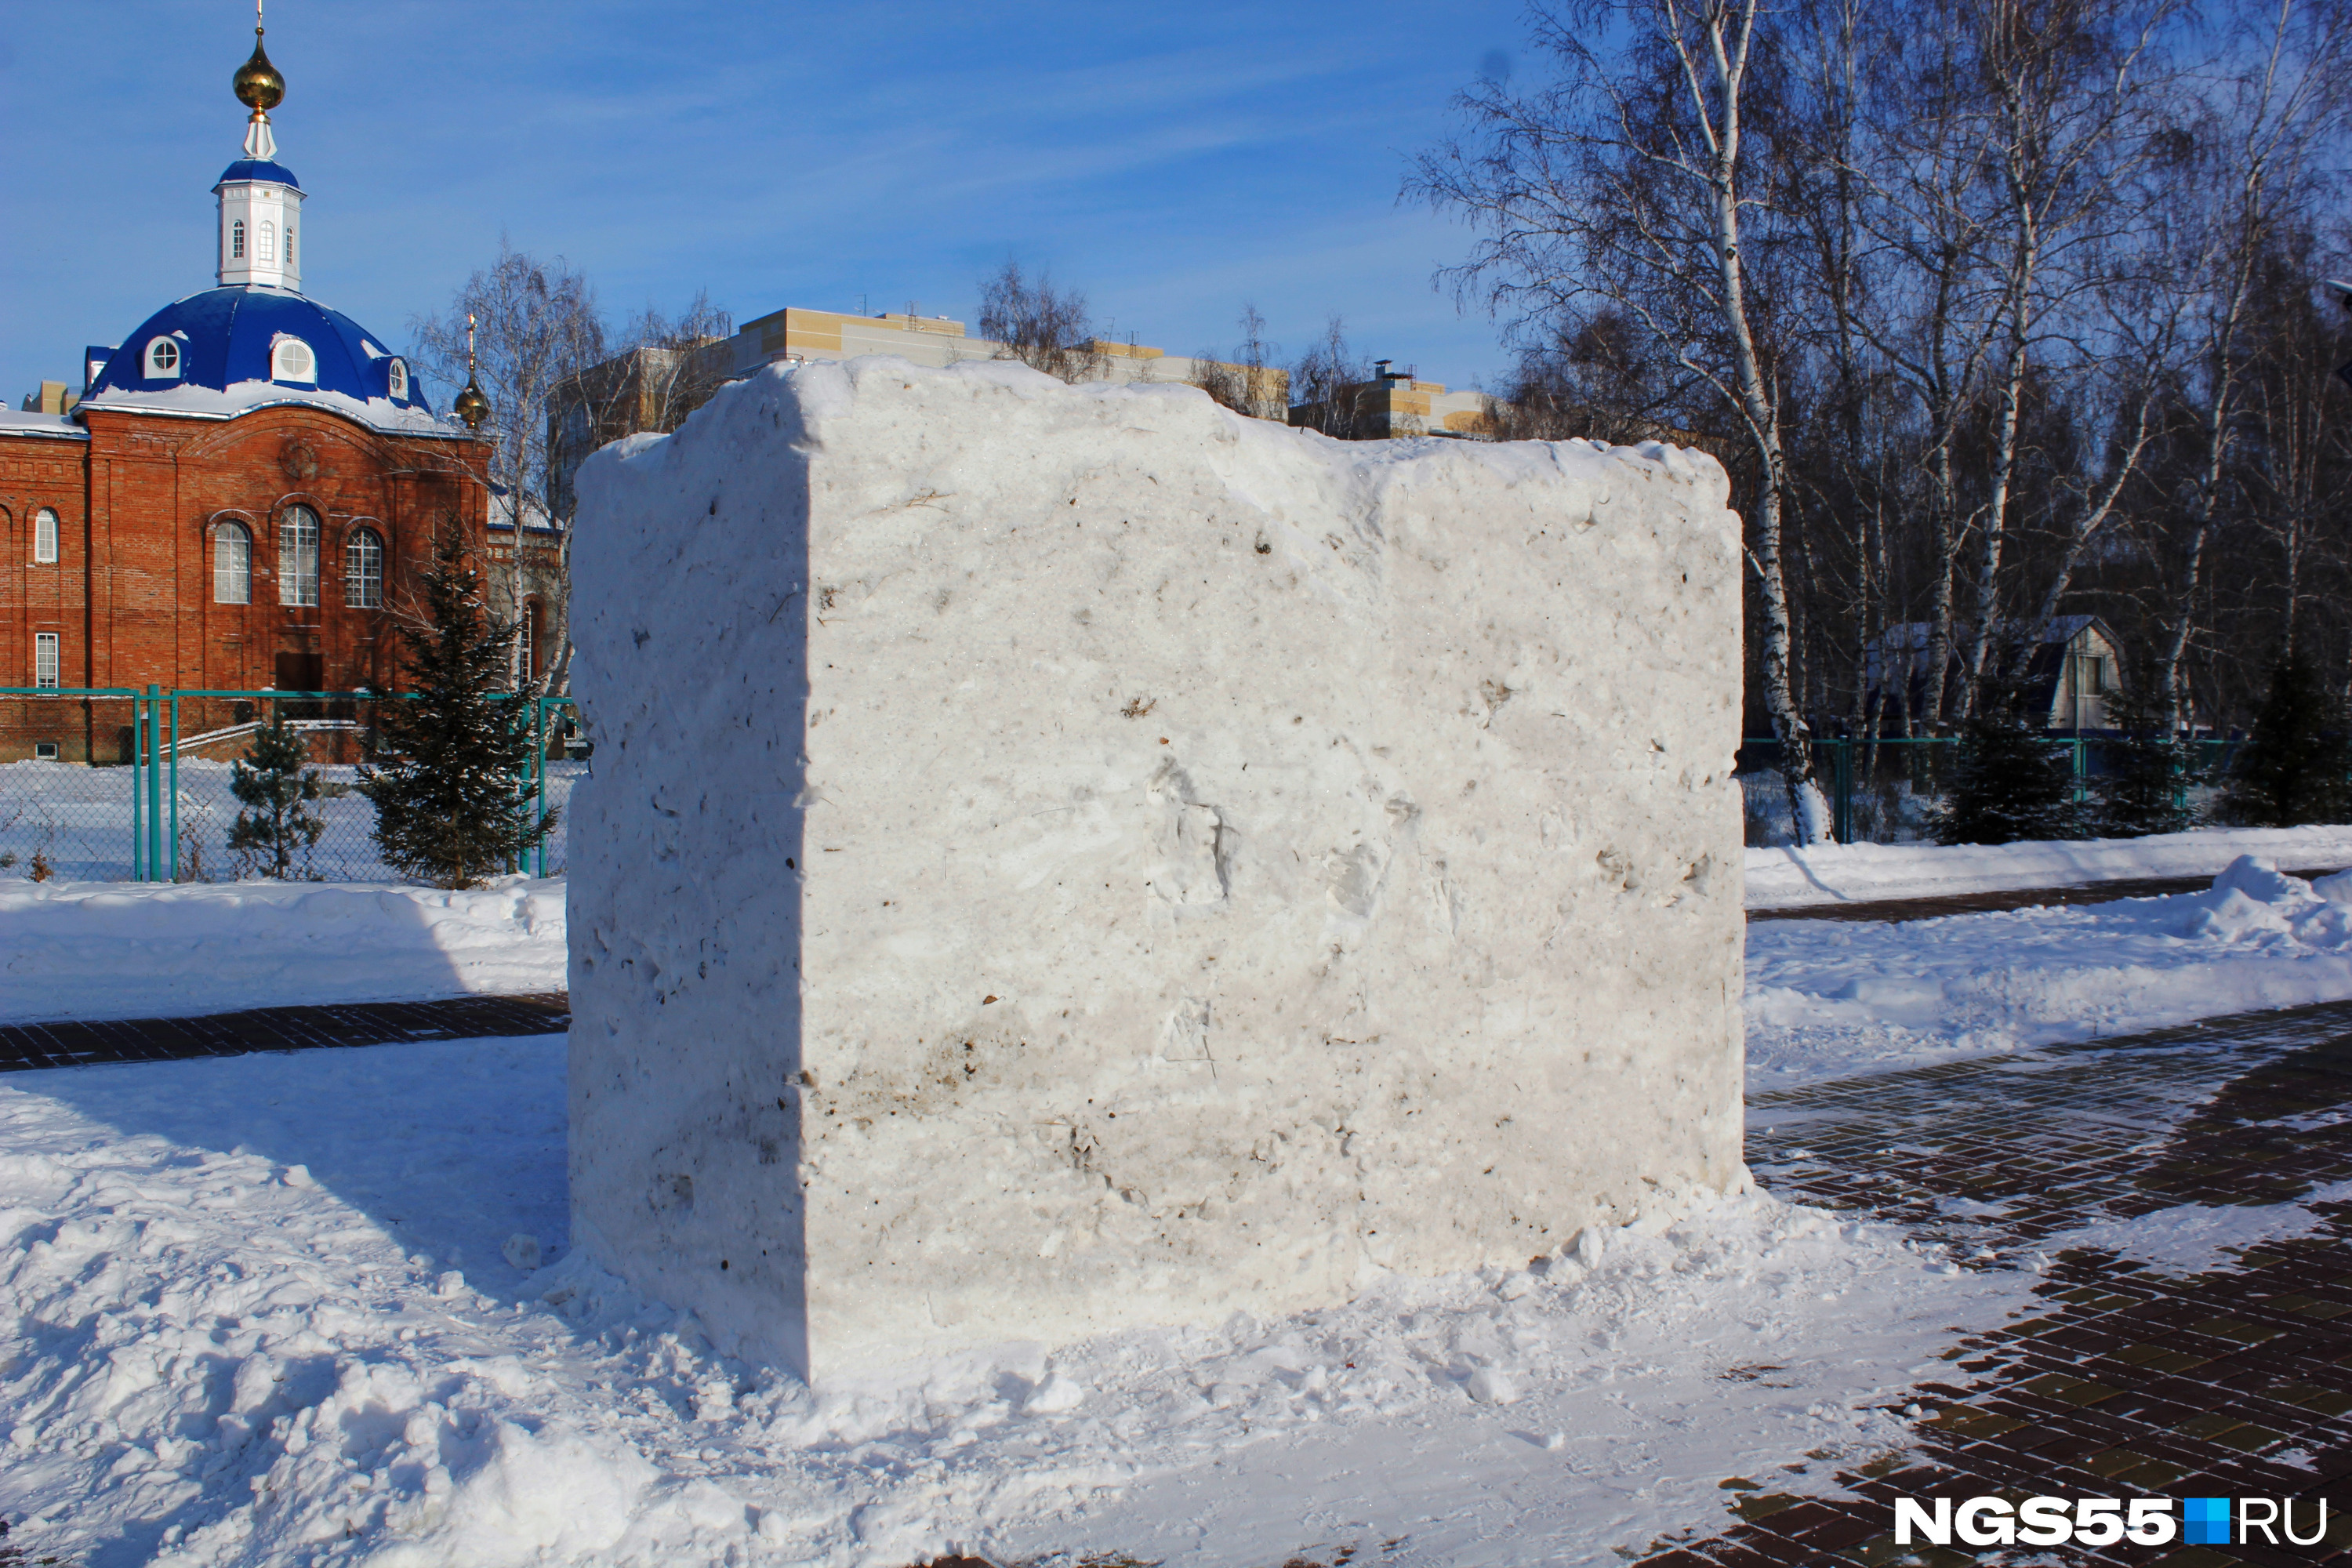 Через несколько минут стало понятно, на что ушел весь чистый снег в парке. Полюбуйтесь — памятник снегу! Такому кубу позавидовали бы даже Пабло Пикассо и Винченцо Натали